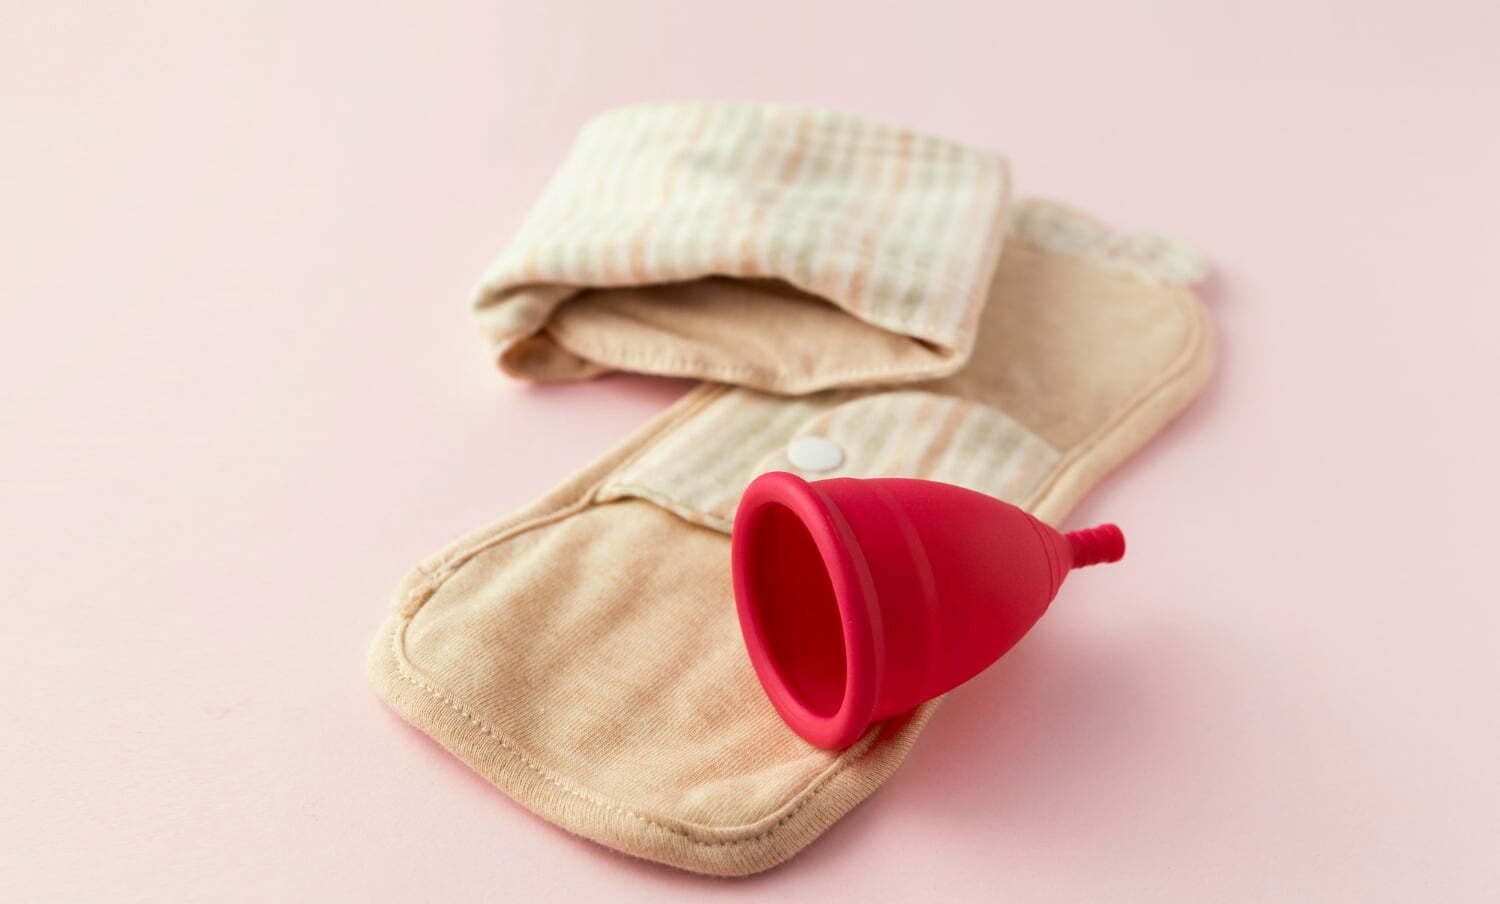 Copa menstrual y toalla de tela, para el periodo menstrual